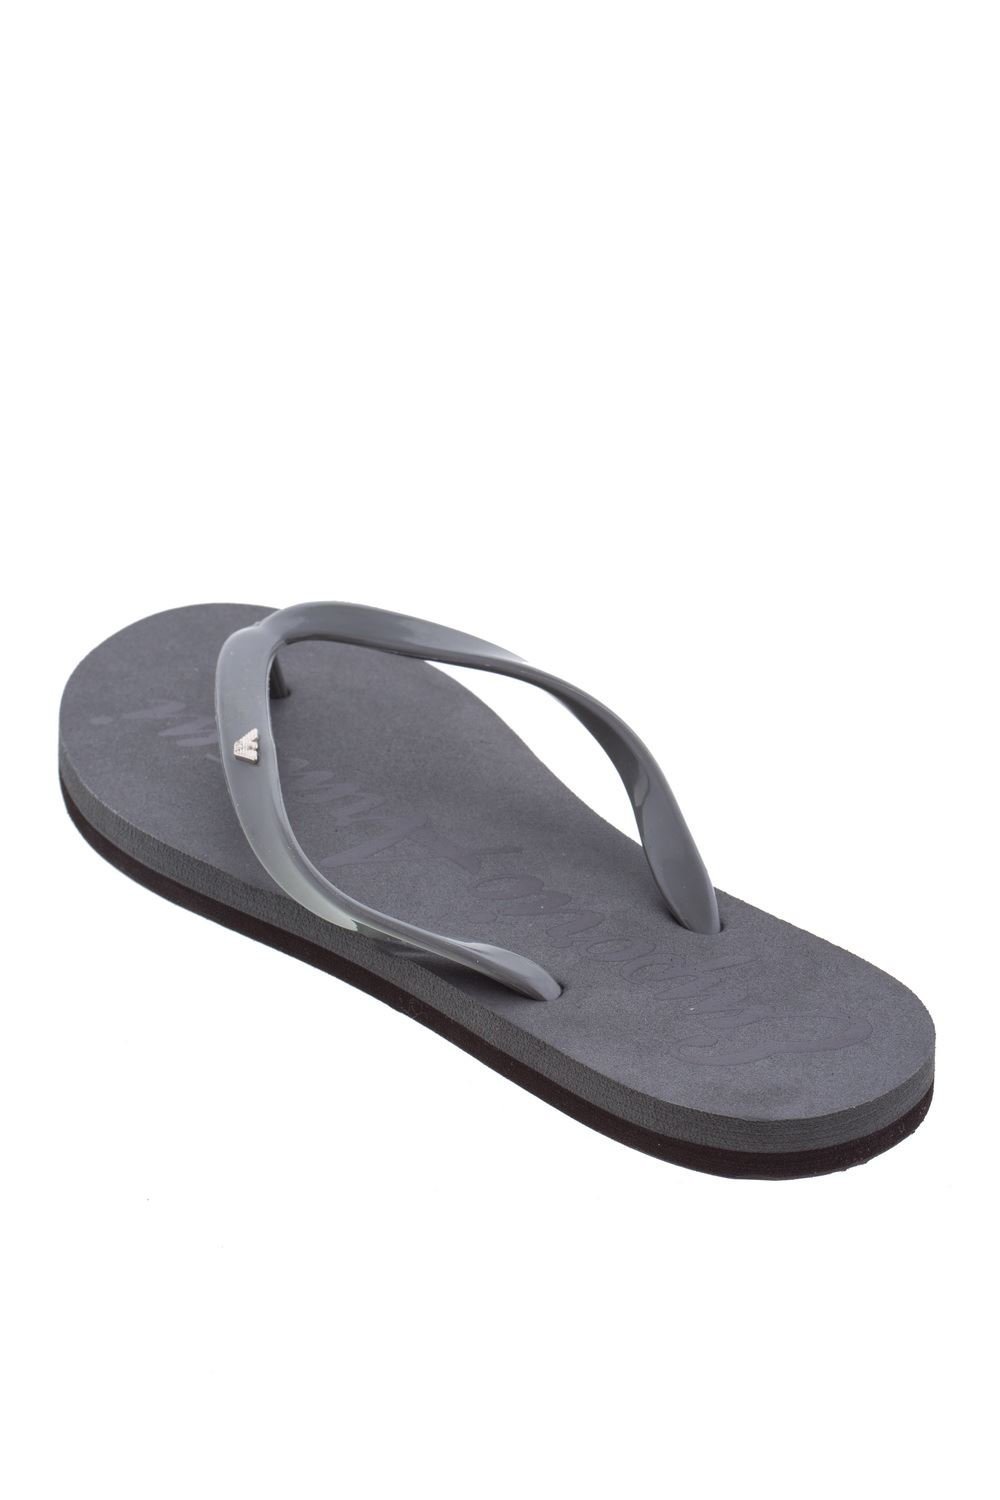 Flat Thong Rubber Sandals Flip Flops 